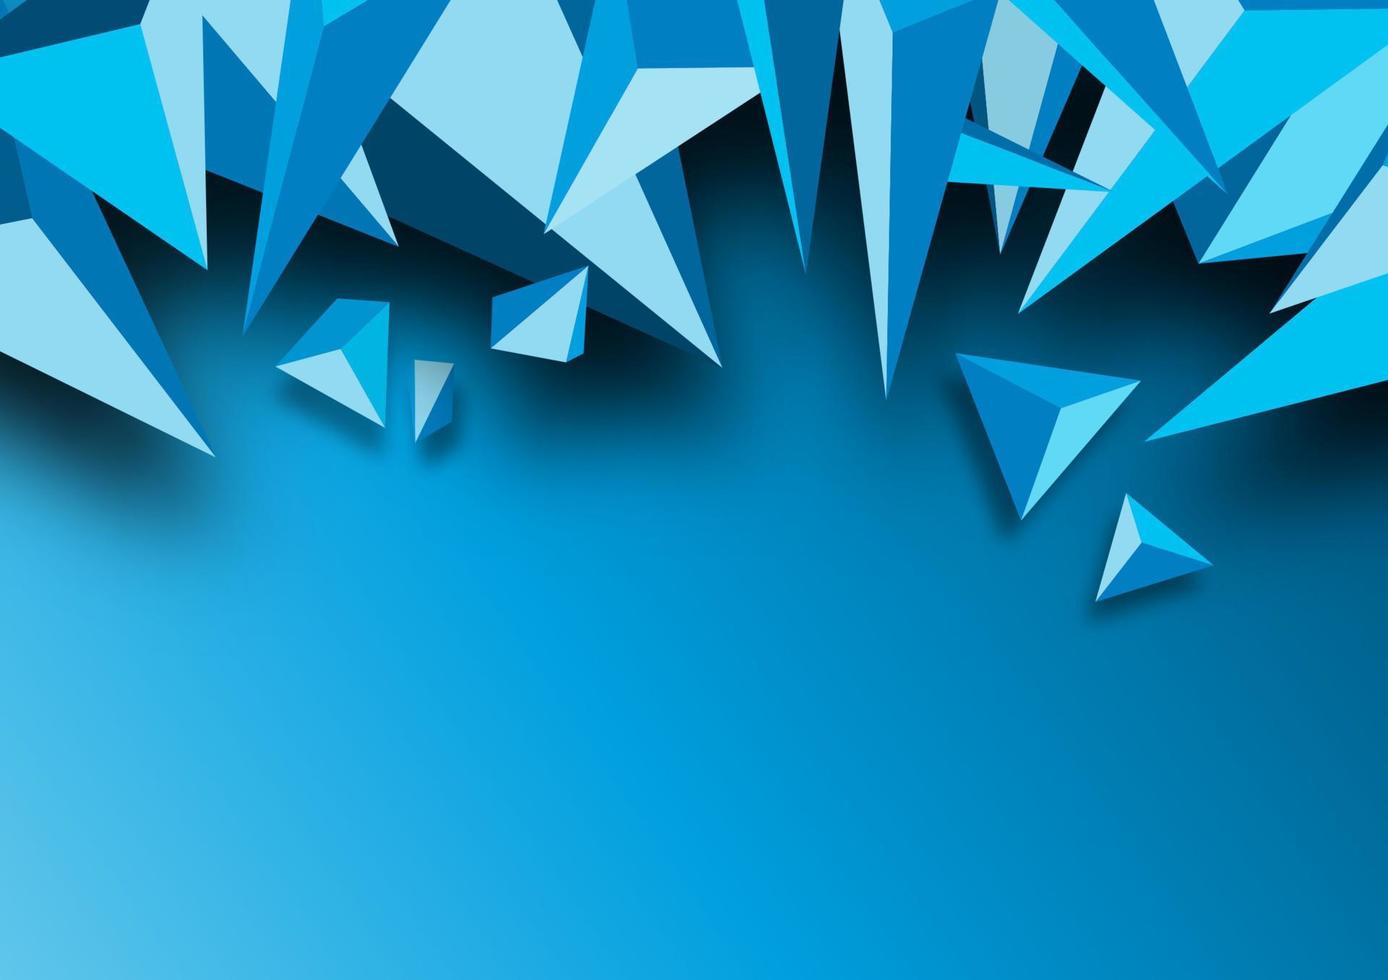 abstrait géométrique bleu triangulaire sur fond bleu dégradé pour bannière web, affiche, dépliant et brochure. vecteur